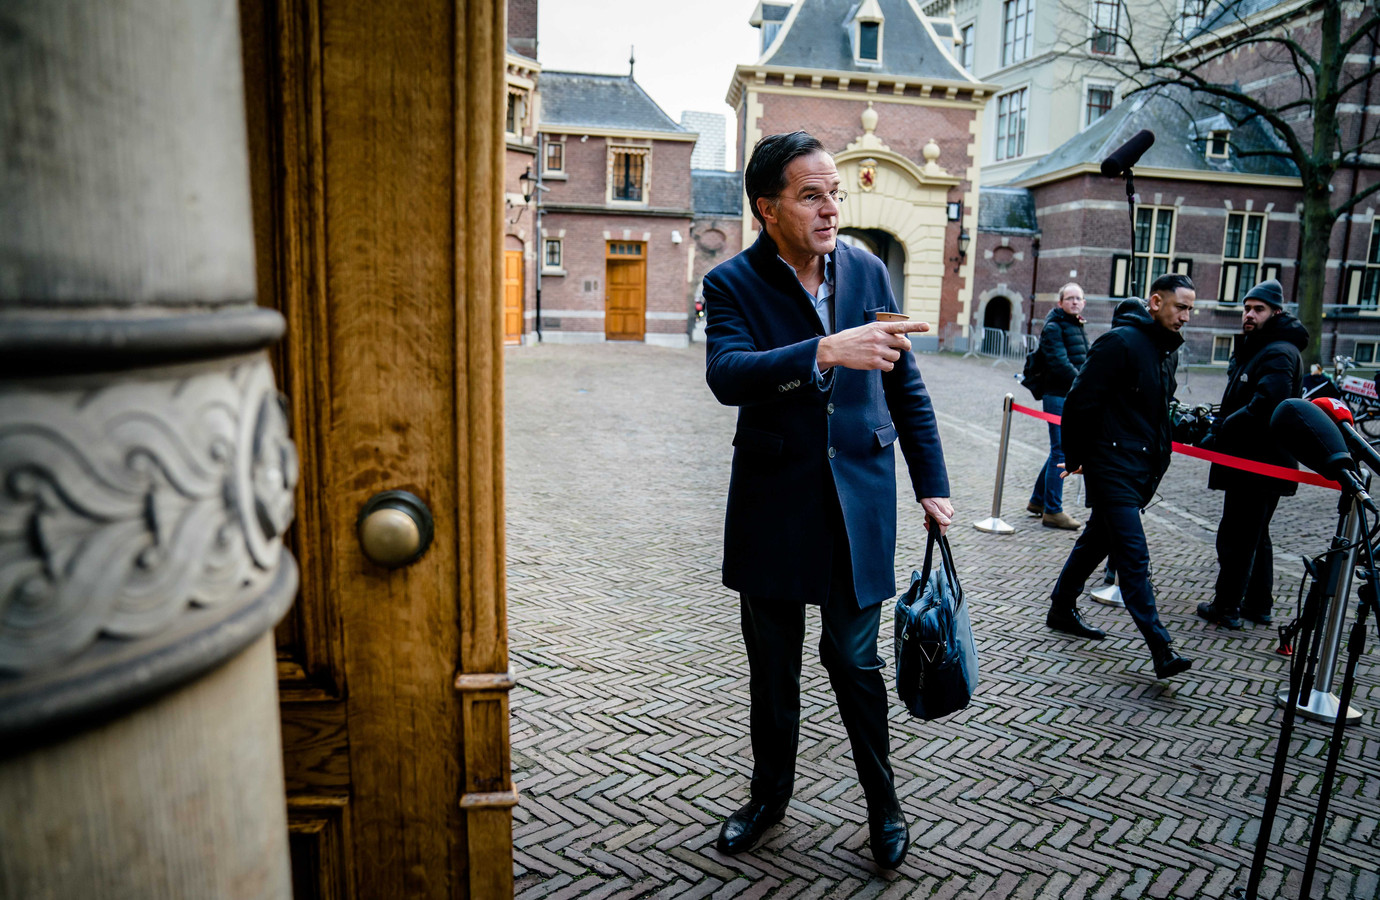 Premier Mark Rutte bij aankomst op het Binnenhof voor de wekelijkse ministerraad.